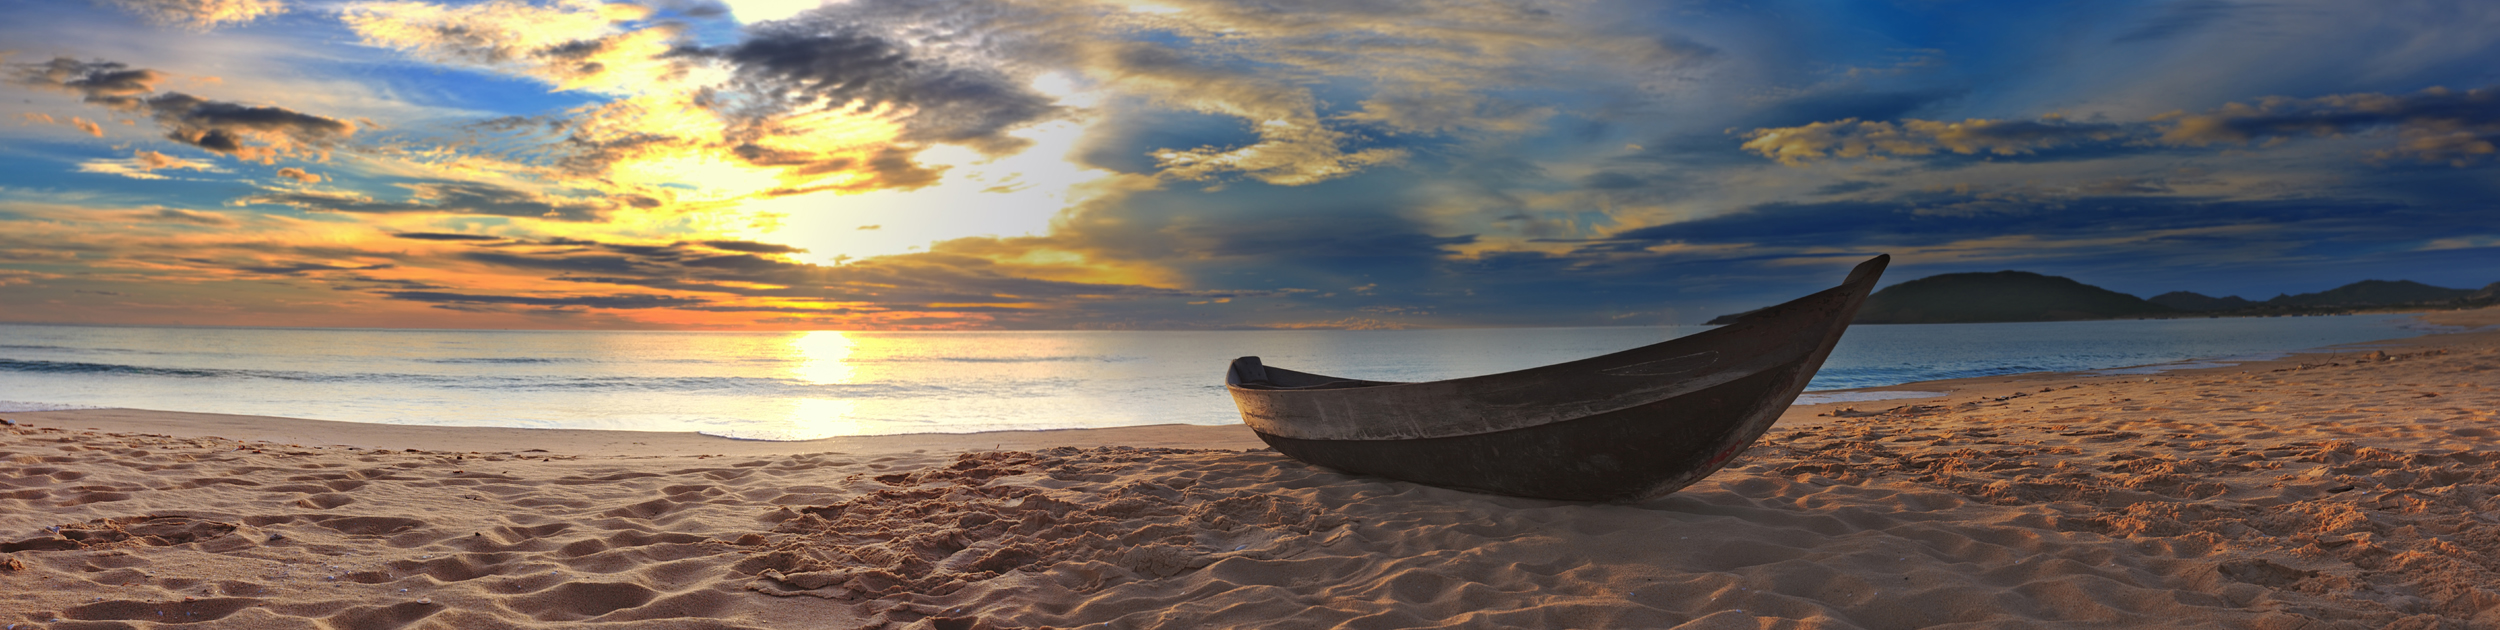 photo of a canoe sitting on a beach